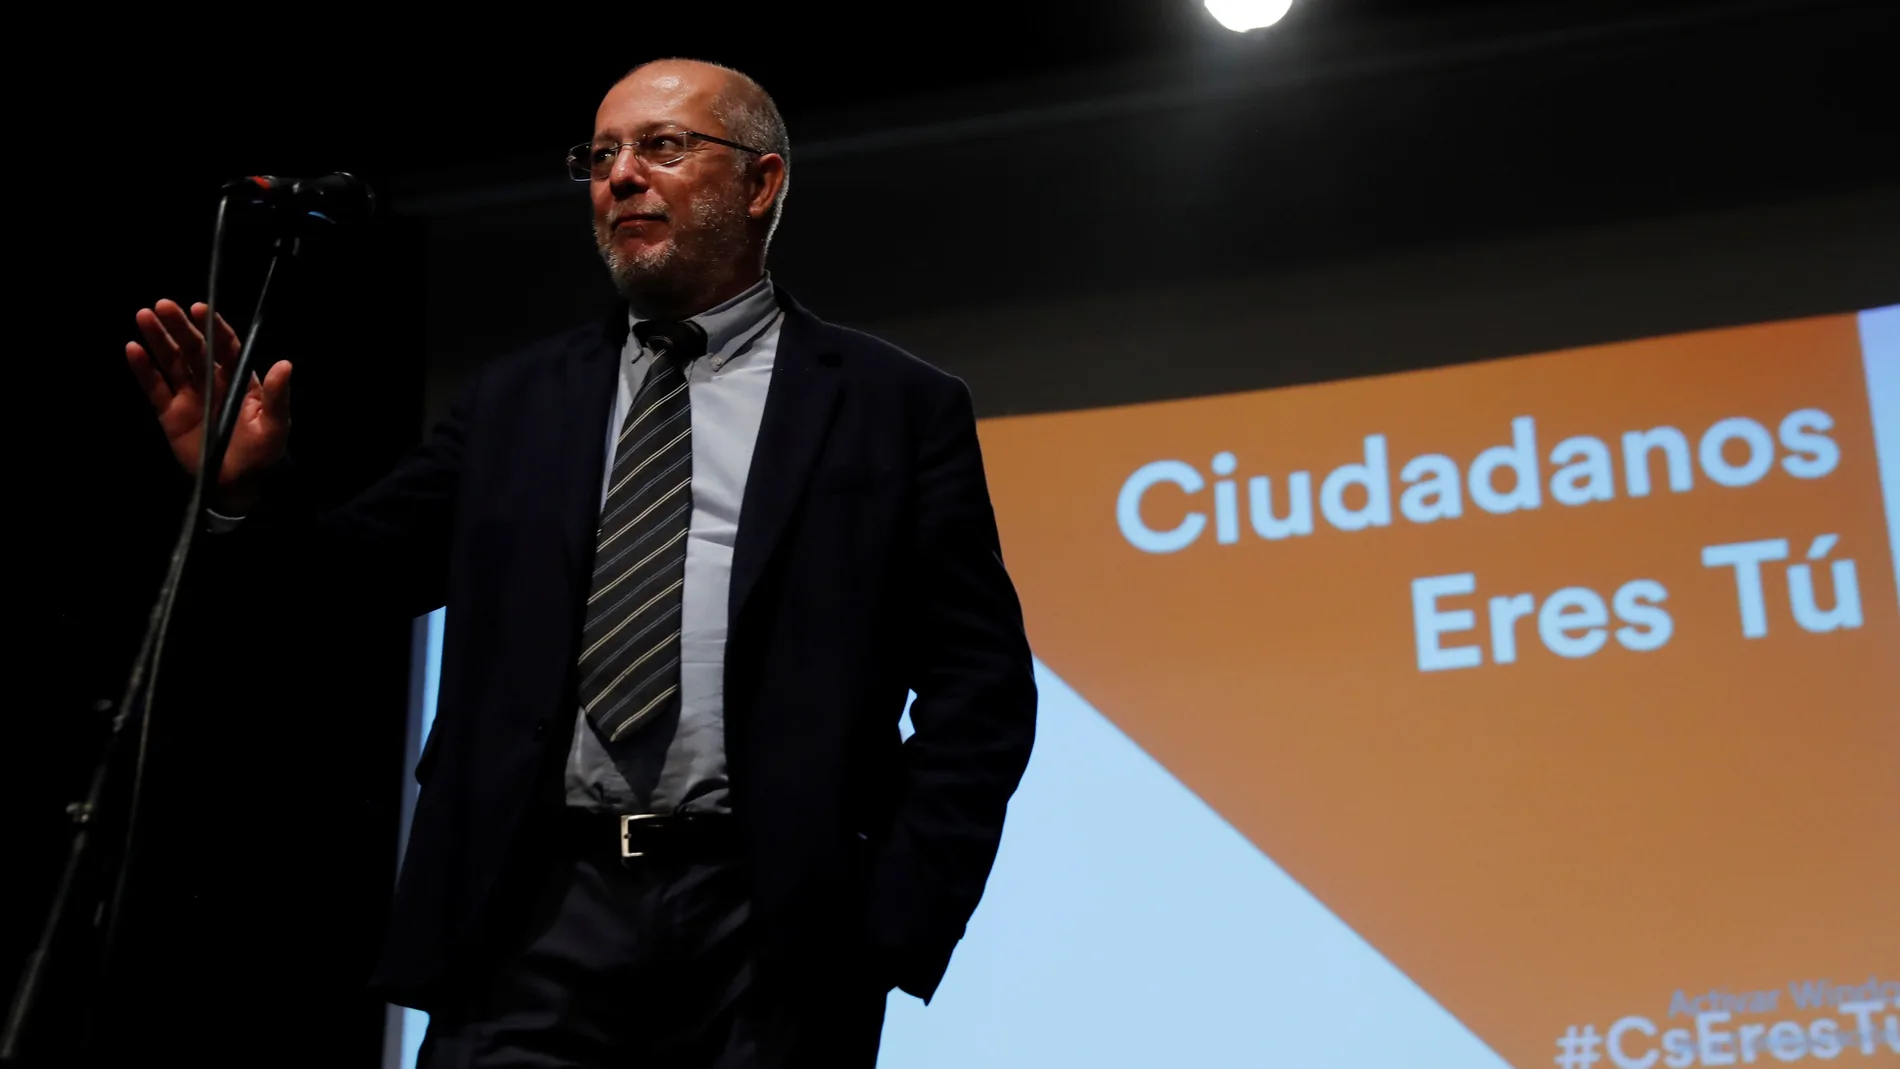 Igea protagoniza un encuentro con candidatos de "##CsEresTú" en Madrid